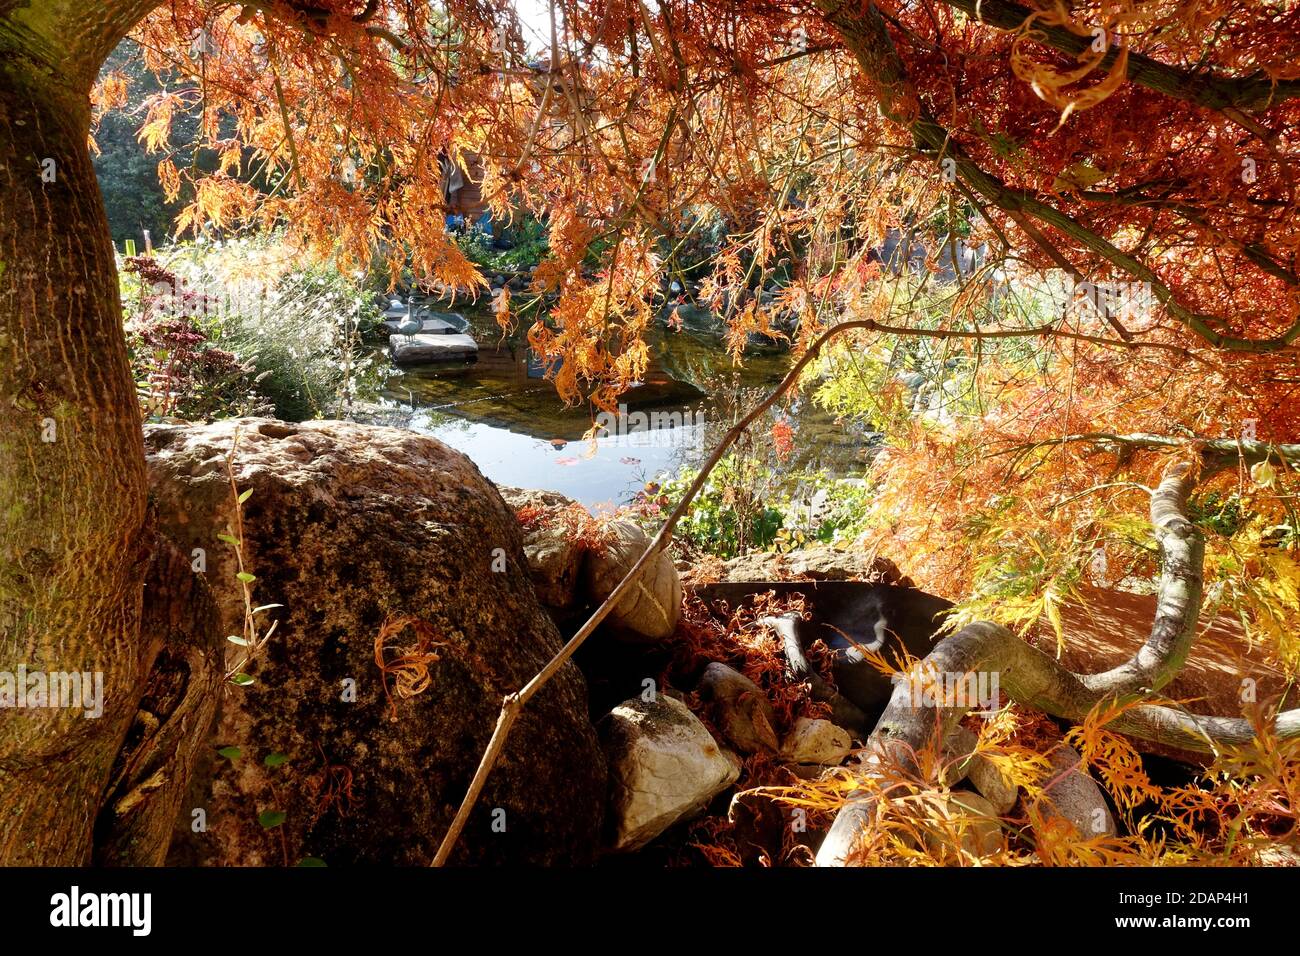 Herbstlaub an einem Fächerahorn (Acer palmatum) Foto Stock